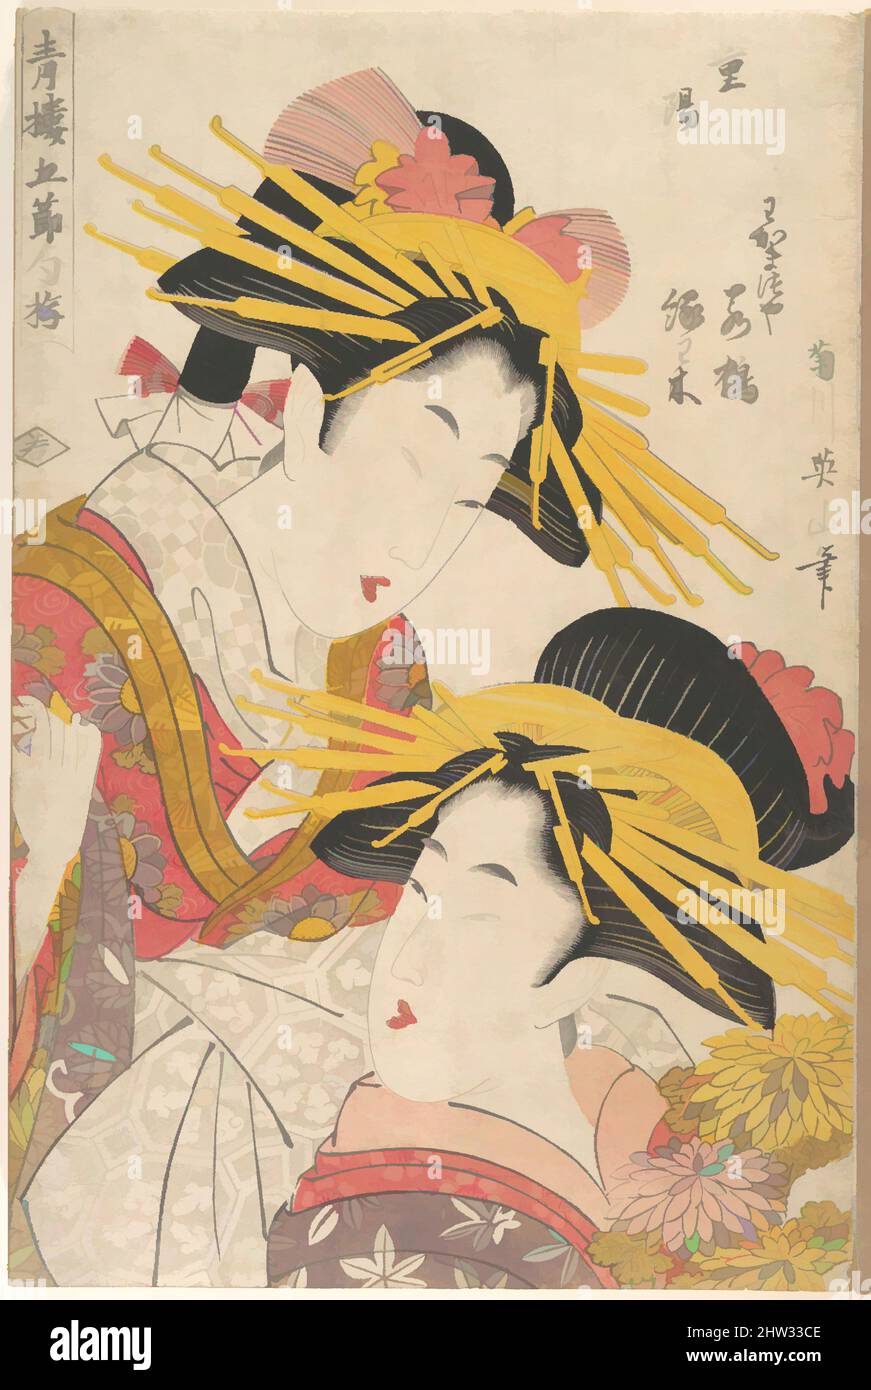 Art inspiré par l'album des estampes de Kikugawa Eizan, Utagawa Kunisada et Utagawa Kunimaru, période Edo (1615–1868), 19th siècle, Japon, Album de 24 imprimés polychromes sur bois ; encre et couleur sur papier, 14 5/8 × 9 3/4 × 1 1/4 po. (37,1 × 24,8 × 3,2 cm), estampes, estampes de Nineteen, œuvres classiques modernisées par Artotop avec une touche de modernité. Formes, couleur et valeur, impact visuel accrocheur sur l'art émotions par la liberté d'œuvres d'art d'une manière contemporaine. Un message intemporel qui cherche une nouvelle direction créative. Artistes qui se tournent vers le support numérique et créent le NFT Artotop Banque D'Images